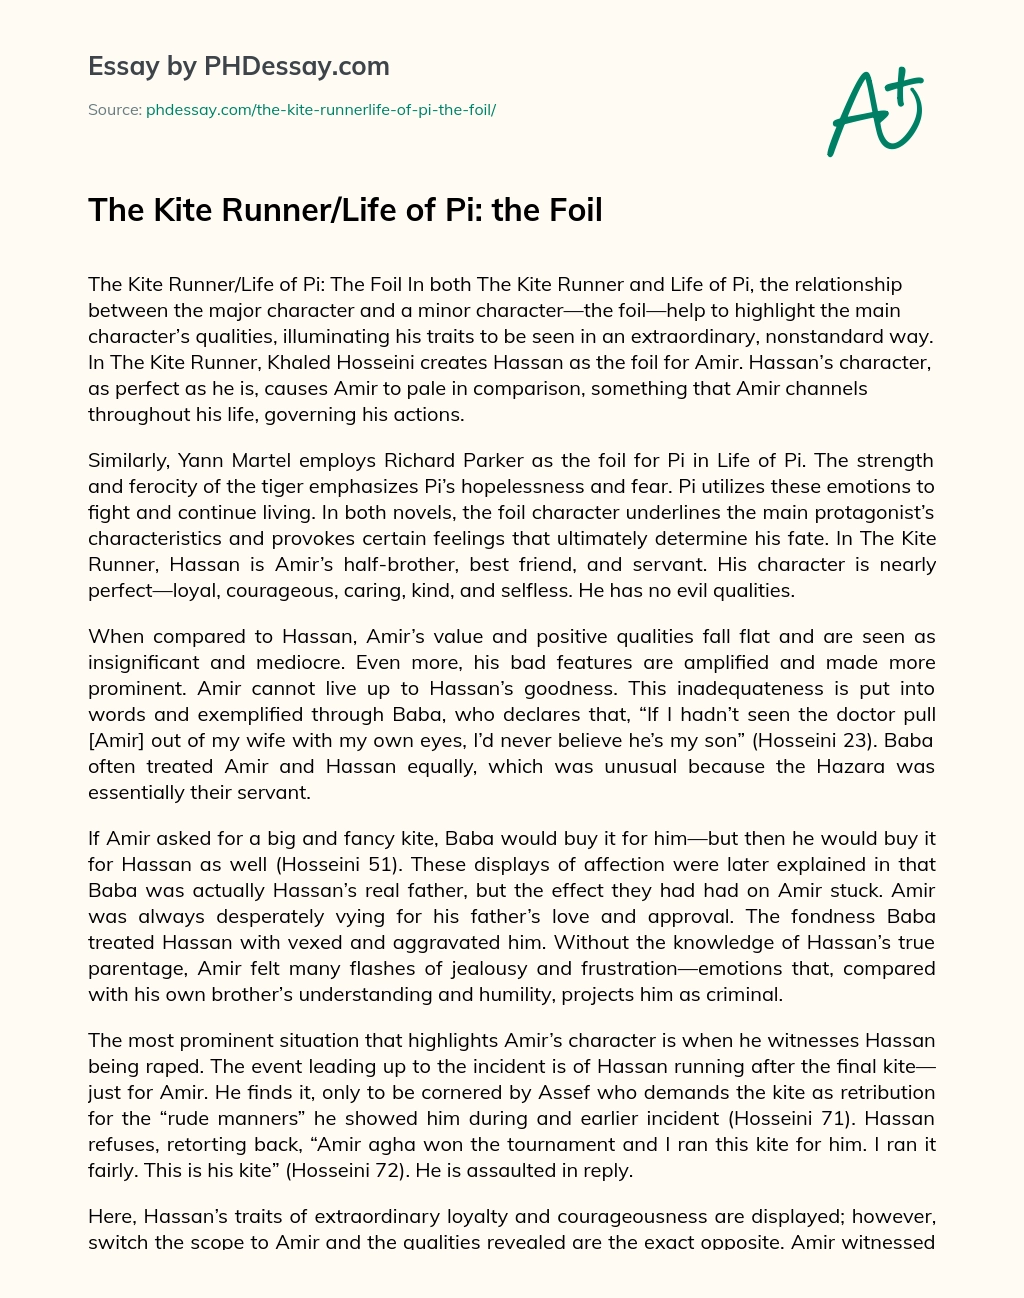 The Kite Runner/Life of Pi: the Foil essay